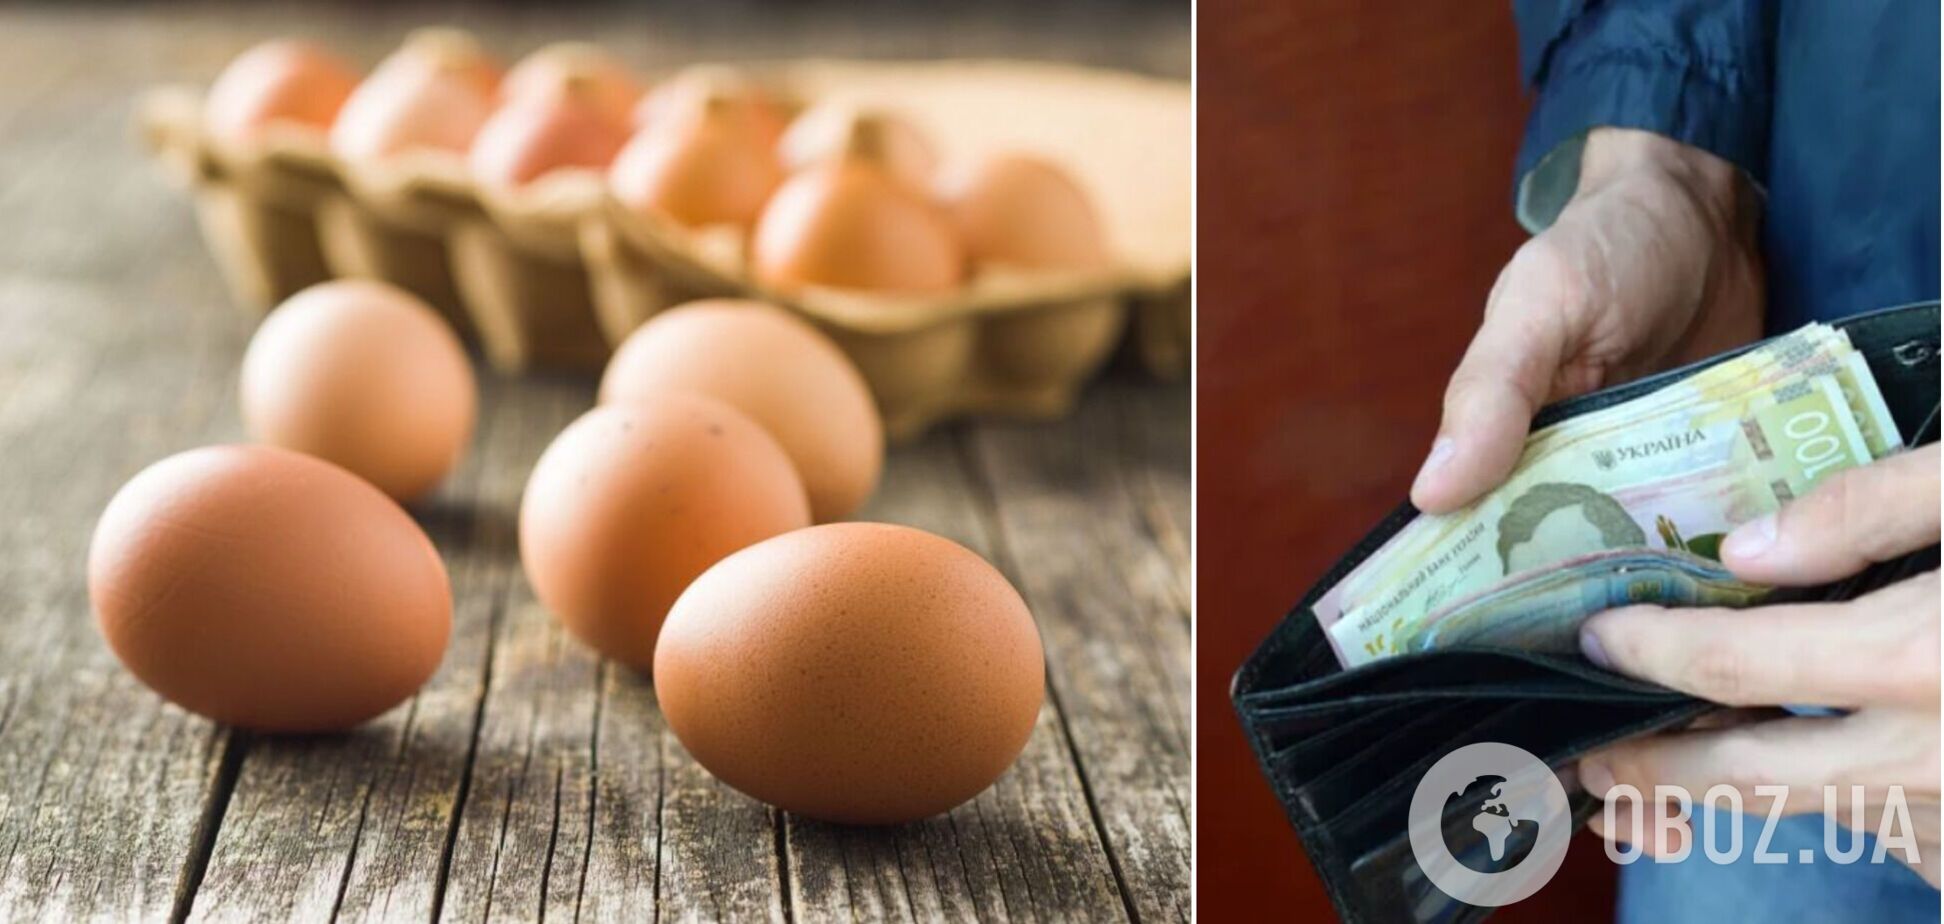 Яйца в Украине подросли в цене